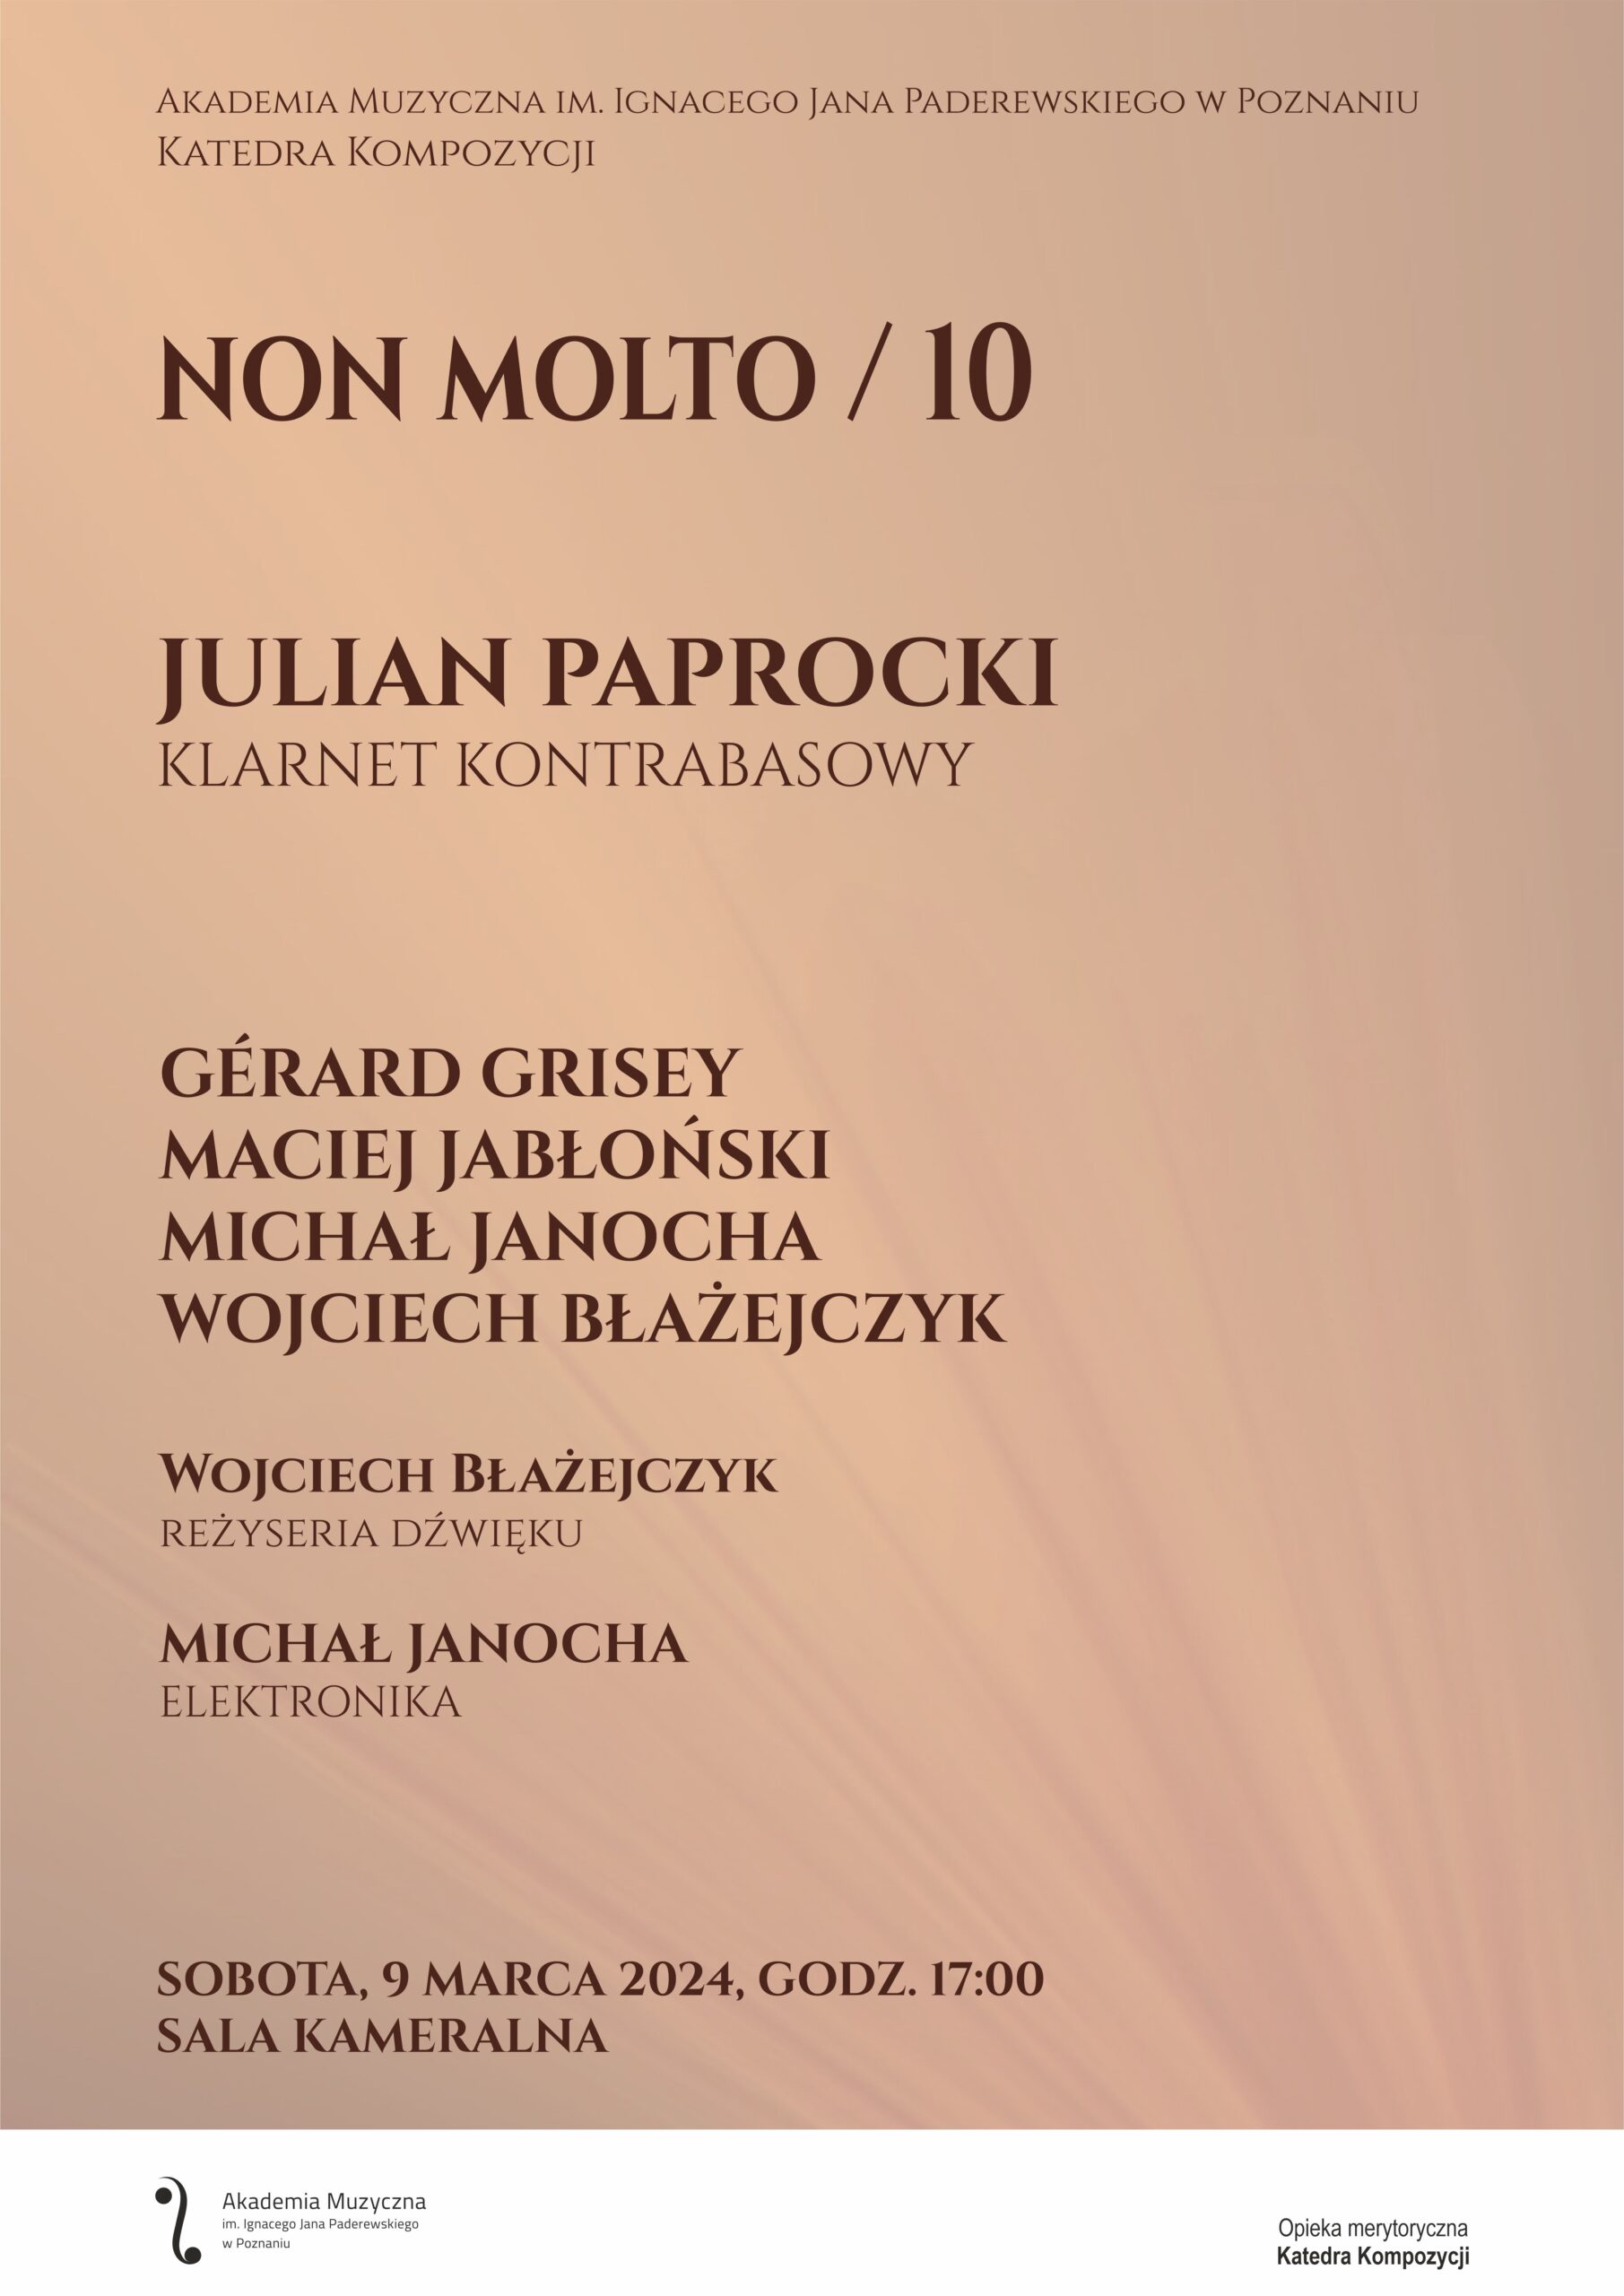 Afisz zawiera informacje na temat koncertu Non Molto 10 w dniu 9 marca 2024